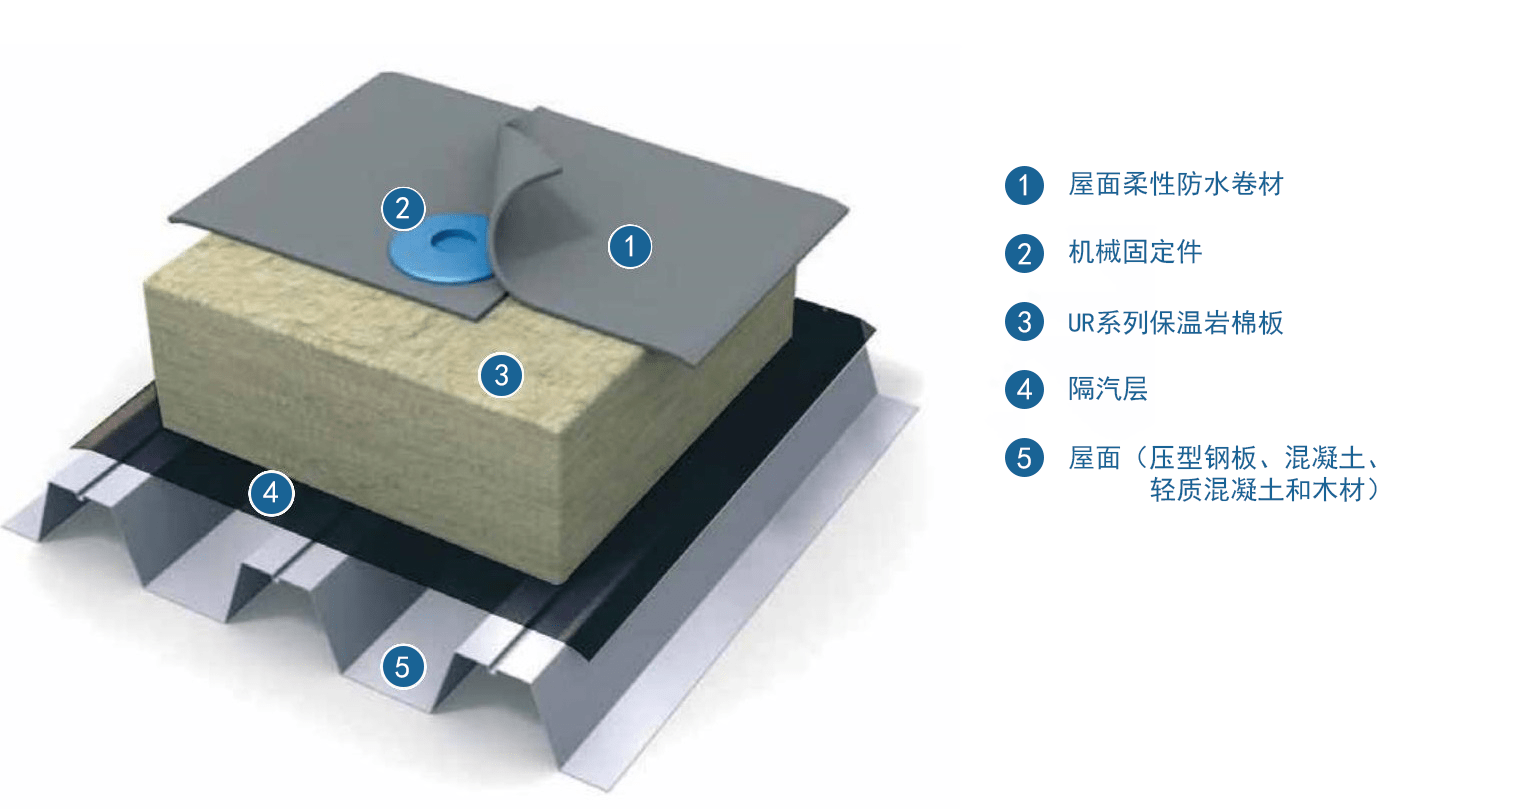 尤特森ueter-c 屋面保温系统用岩棉保温材料_尤特森岩棉